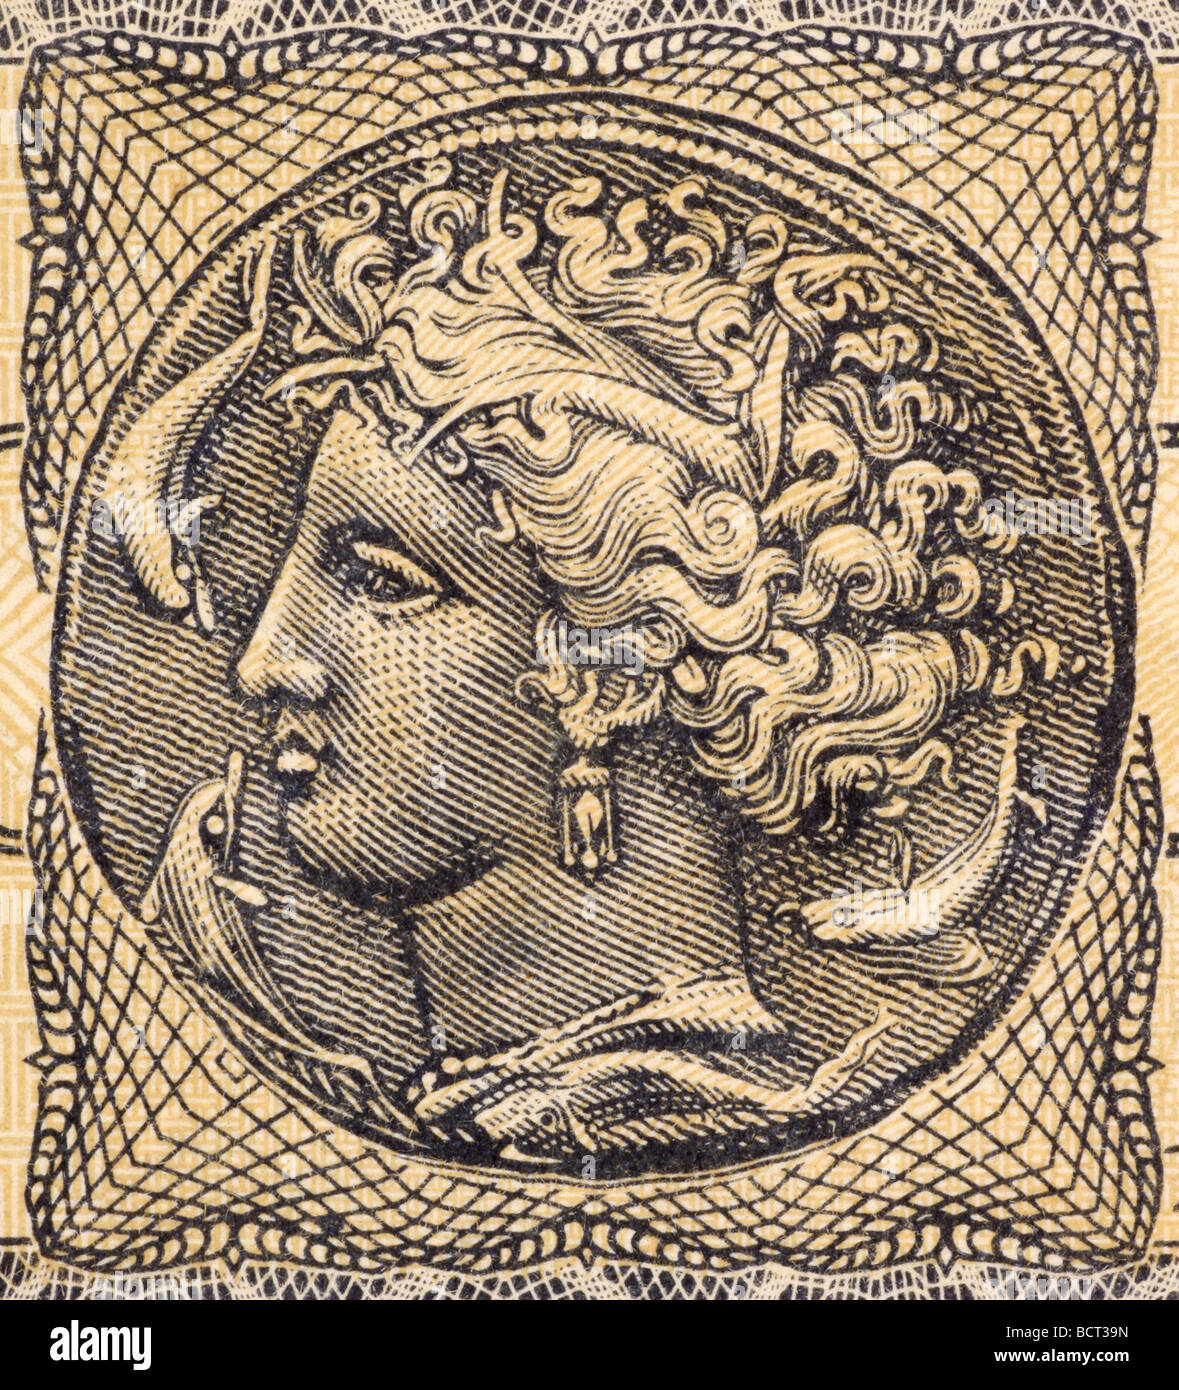 Arethusa sur 5000000 Drachmai 1944 Euros de Grèce Néréide nymphe qui est devenu une fontaine Banque D'Images